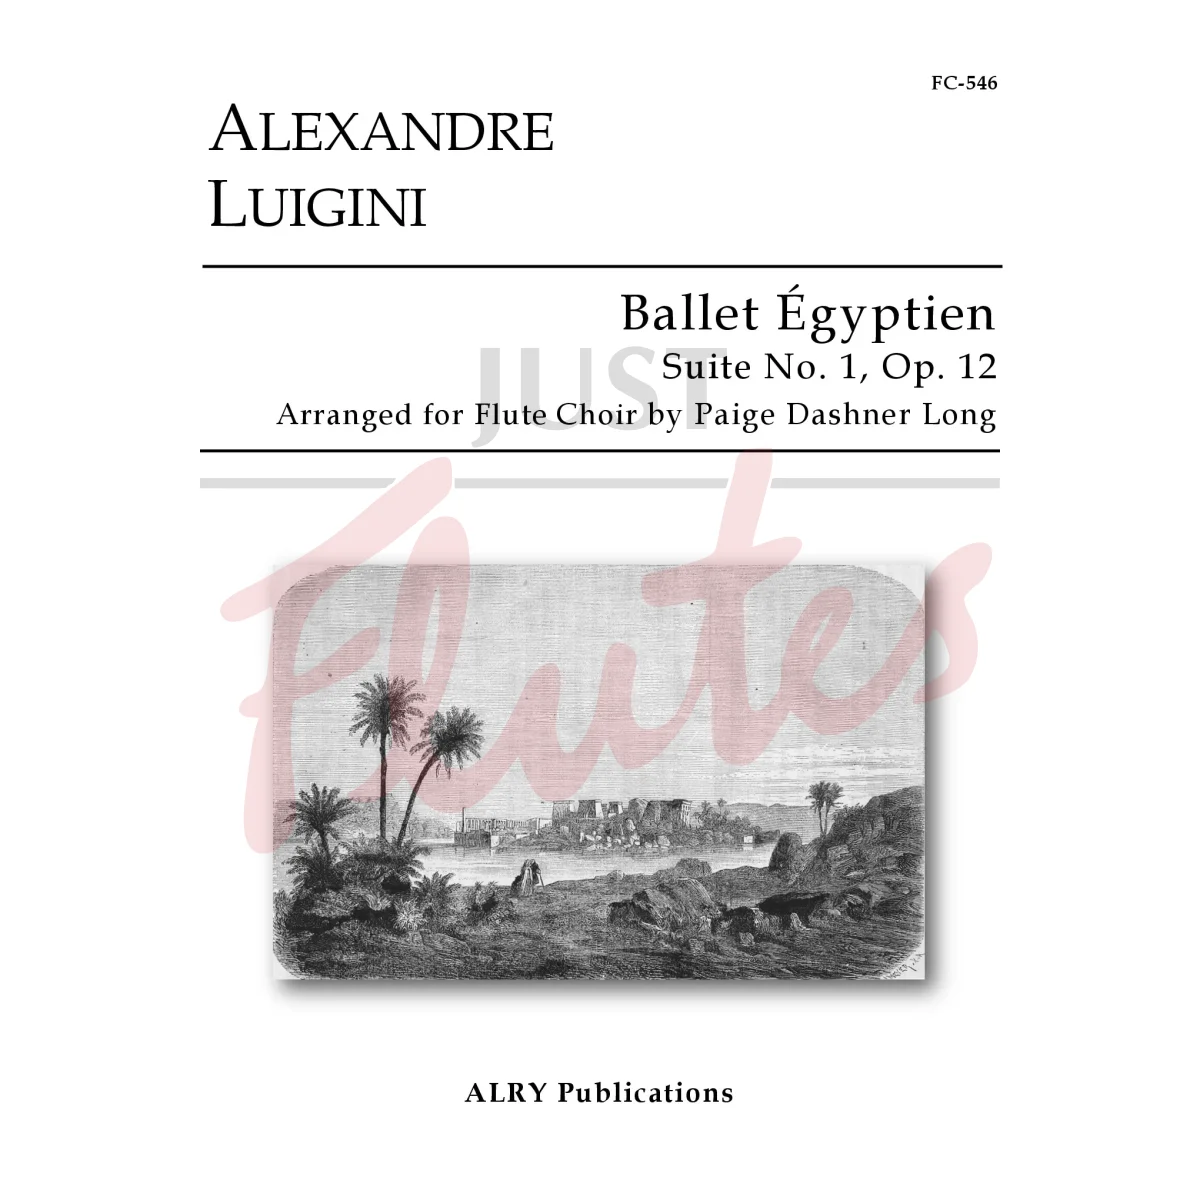 Ballet Égyptien Suite No. 1 for Flute Choir